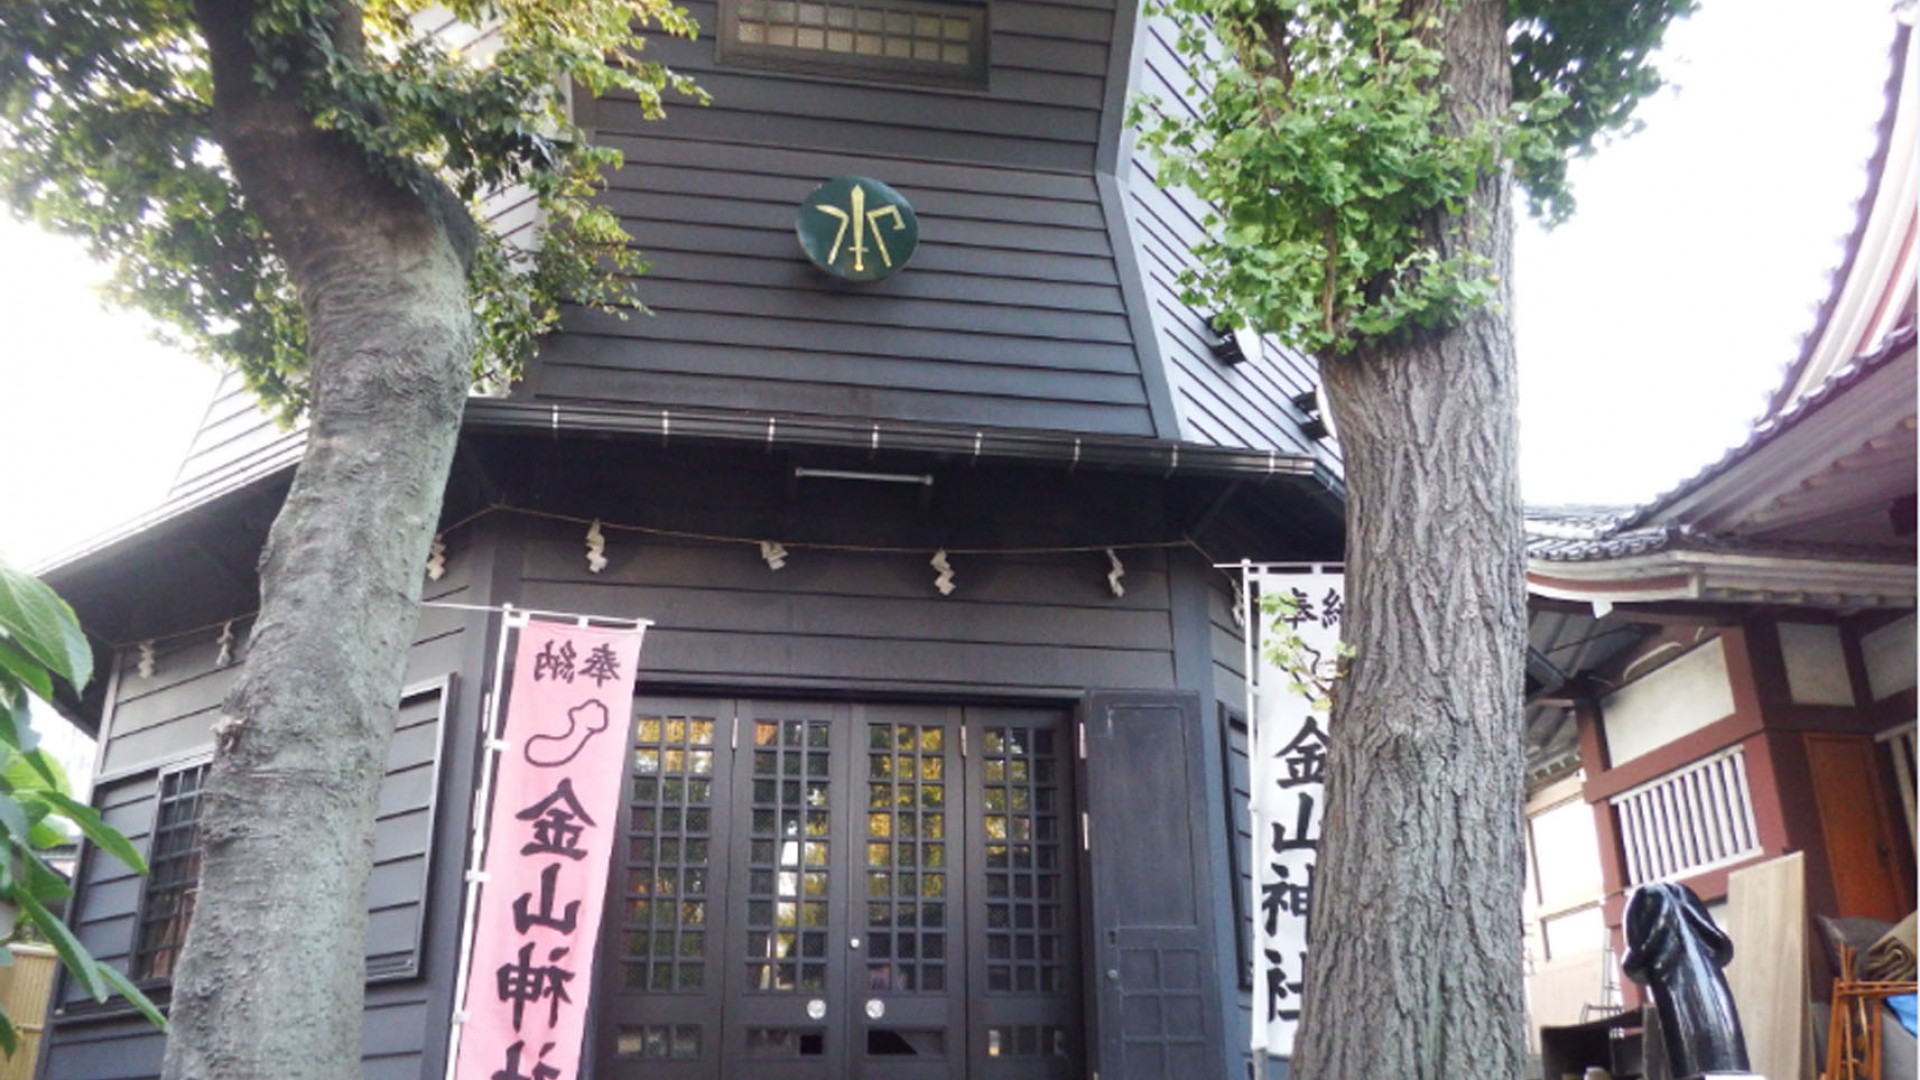 Kanayama Shrine